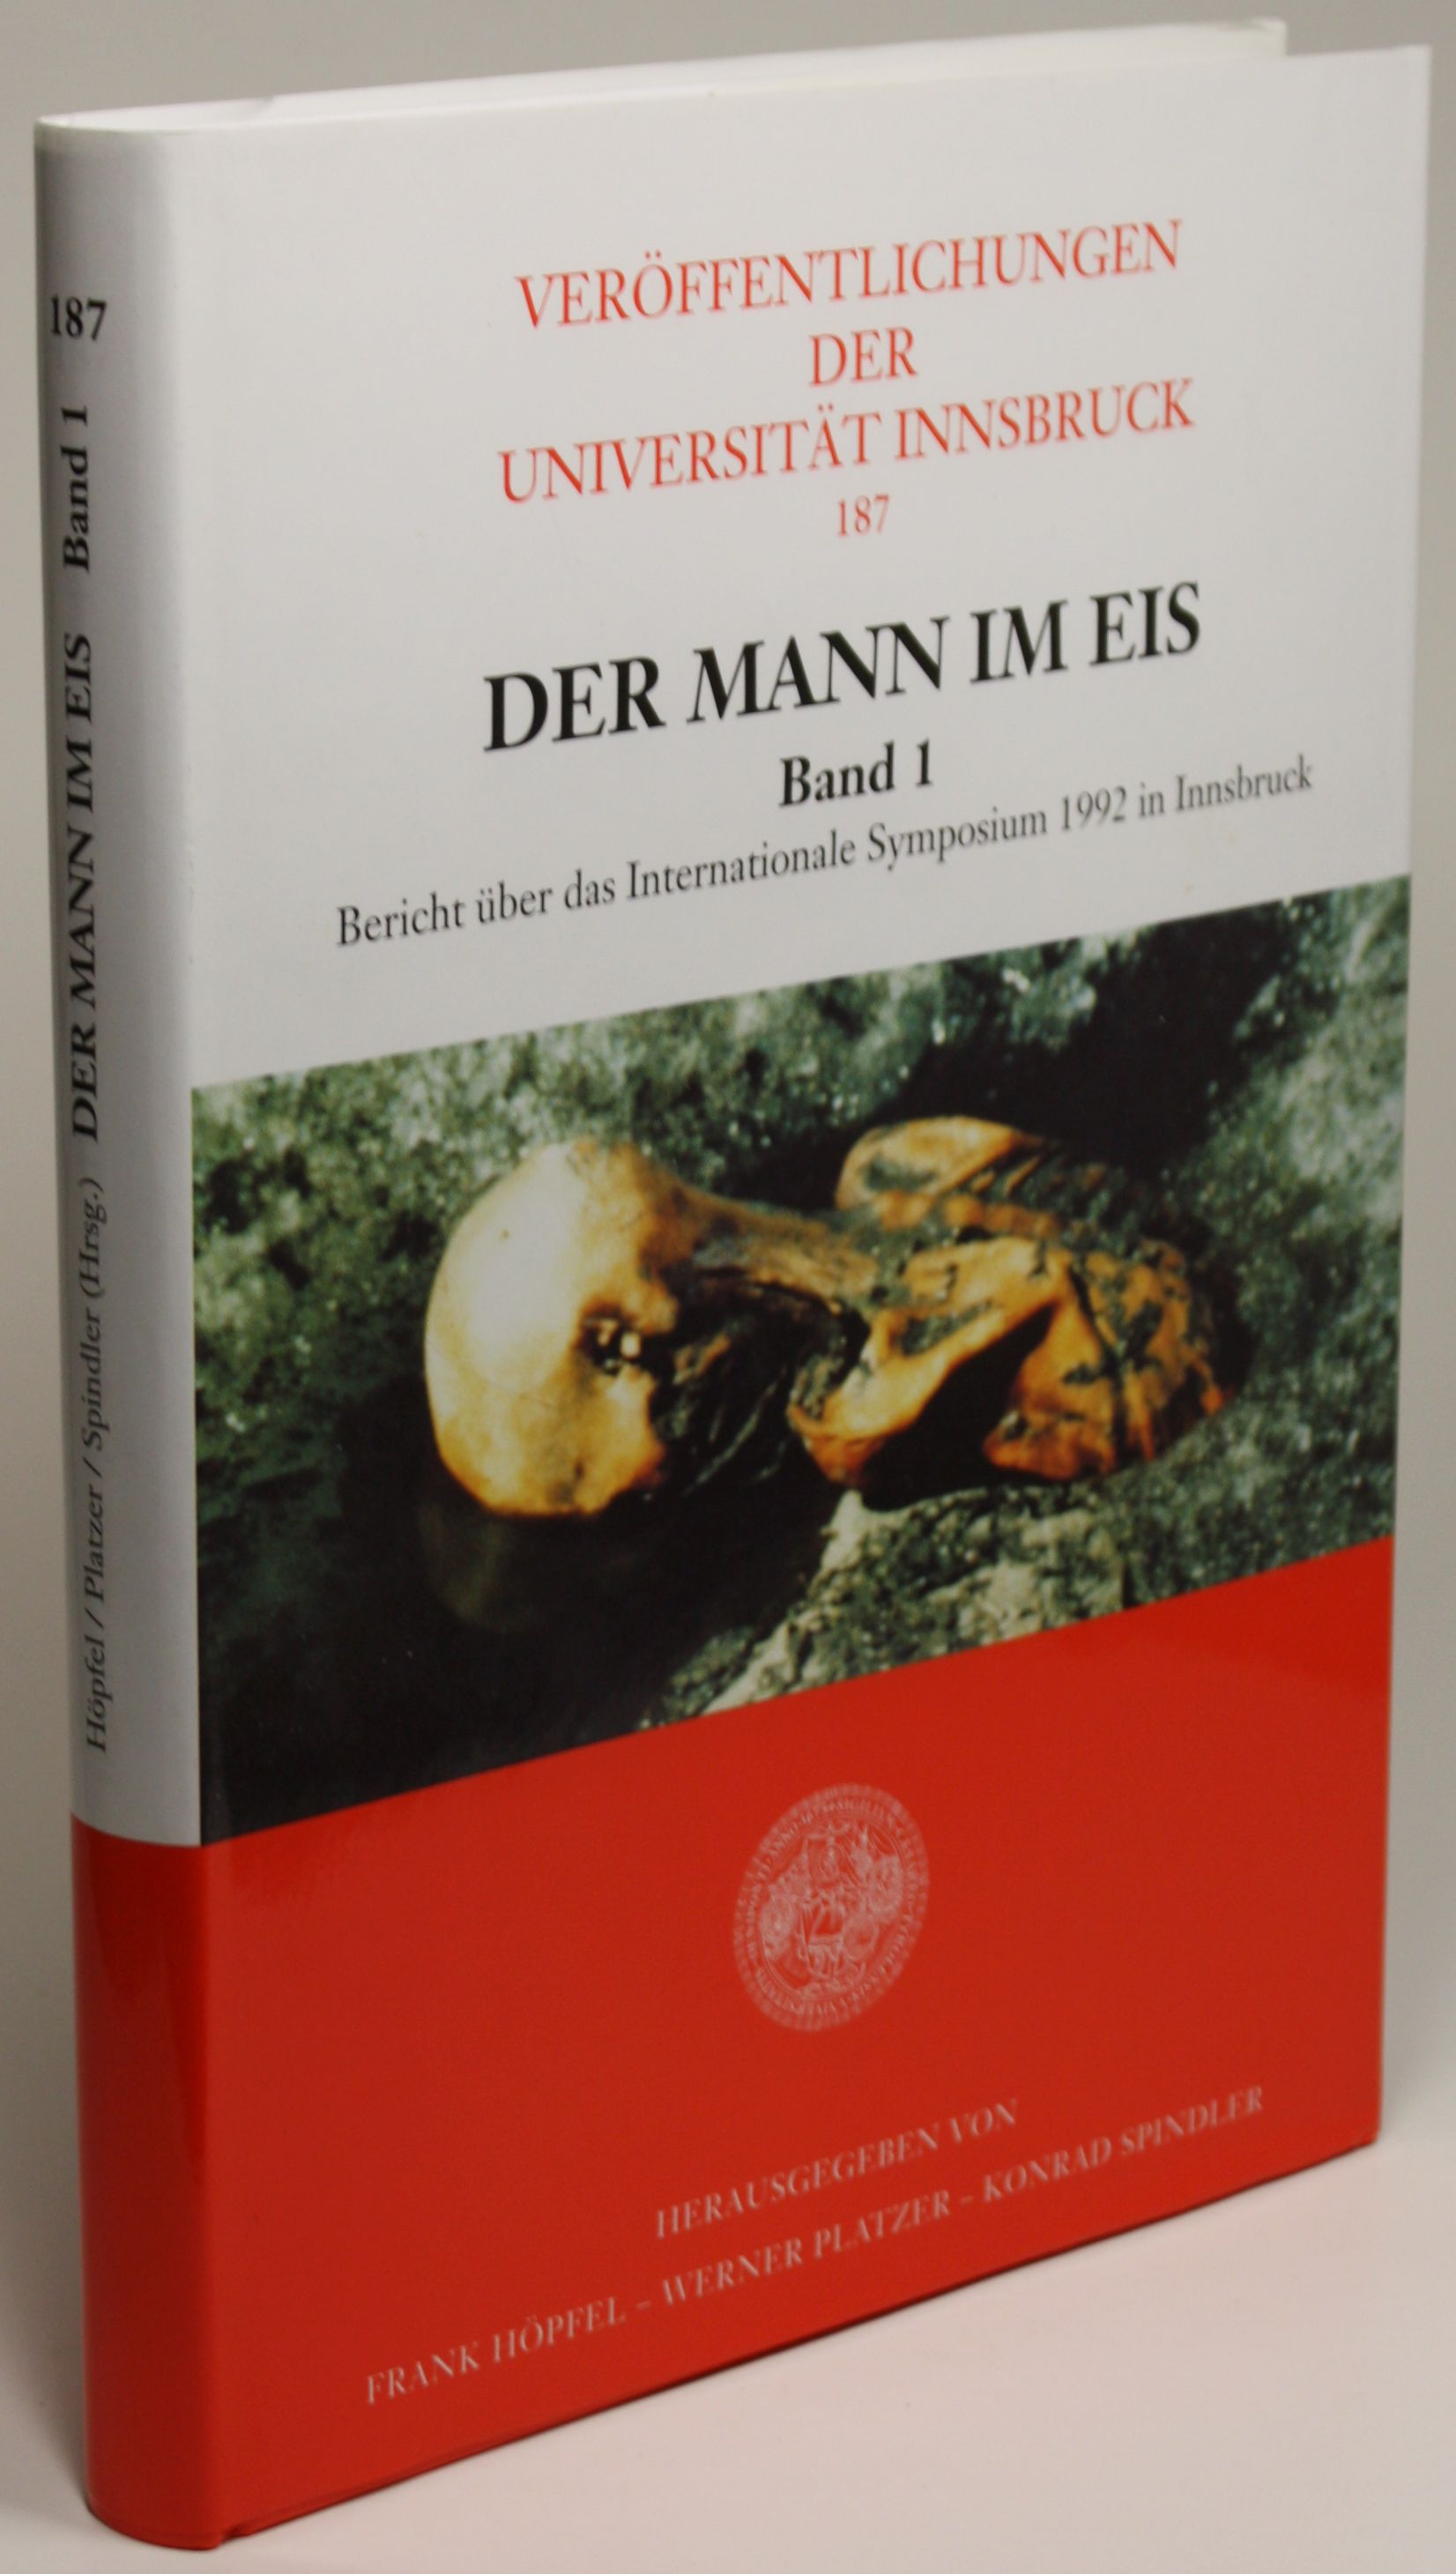 Der Mann im Eis. Band 1. Bericht über das Internationale Symposium 1992 in Innsbruck. - Höpfel, Frank / Platzer, Werner / Spindler, Konrad (Hg.)